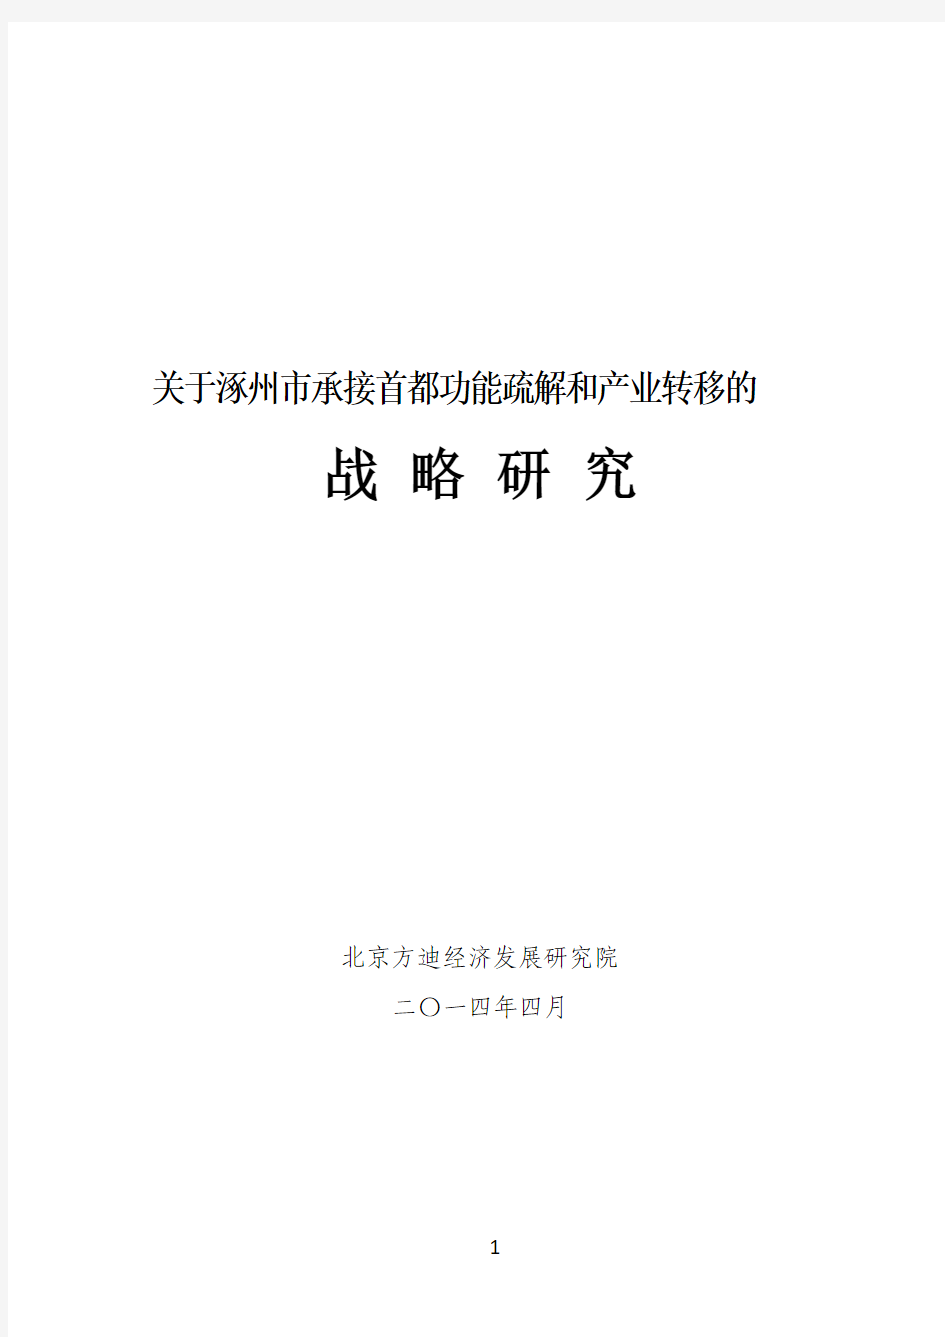 关于涿州市承接首都功能疏解和产业转移的战略研究(定稿)